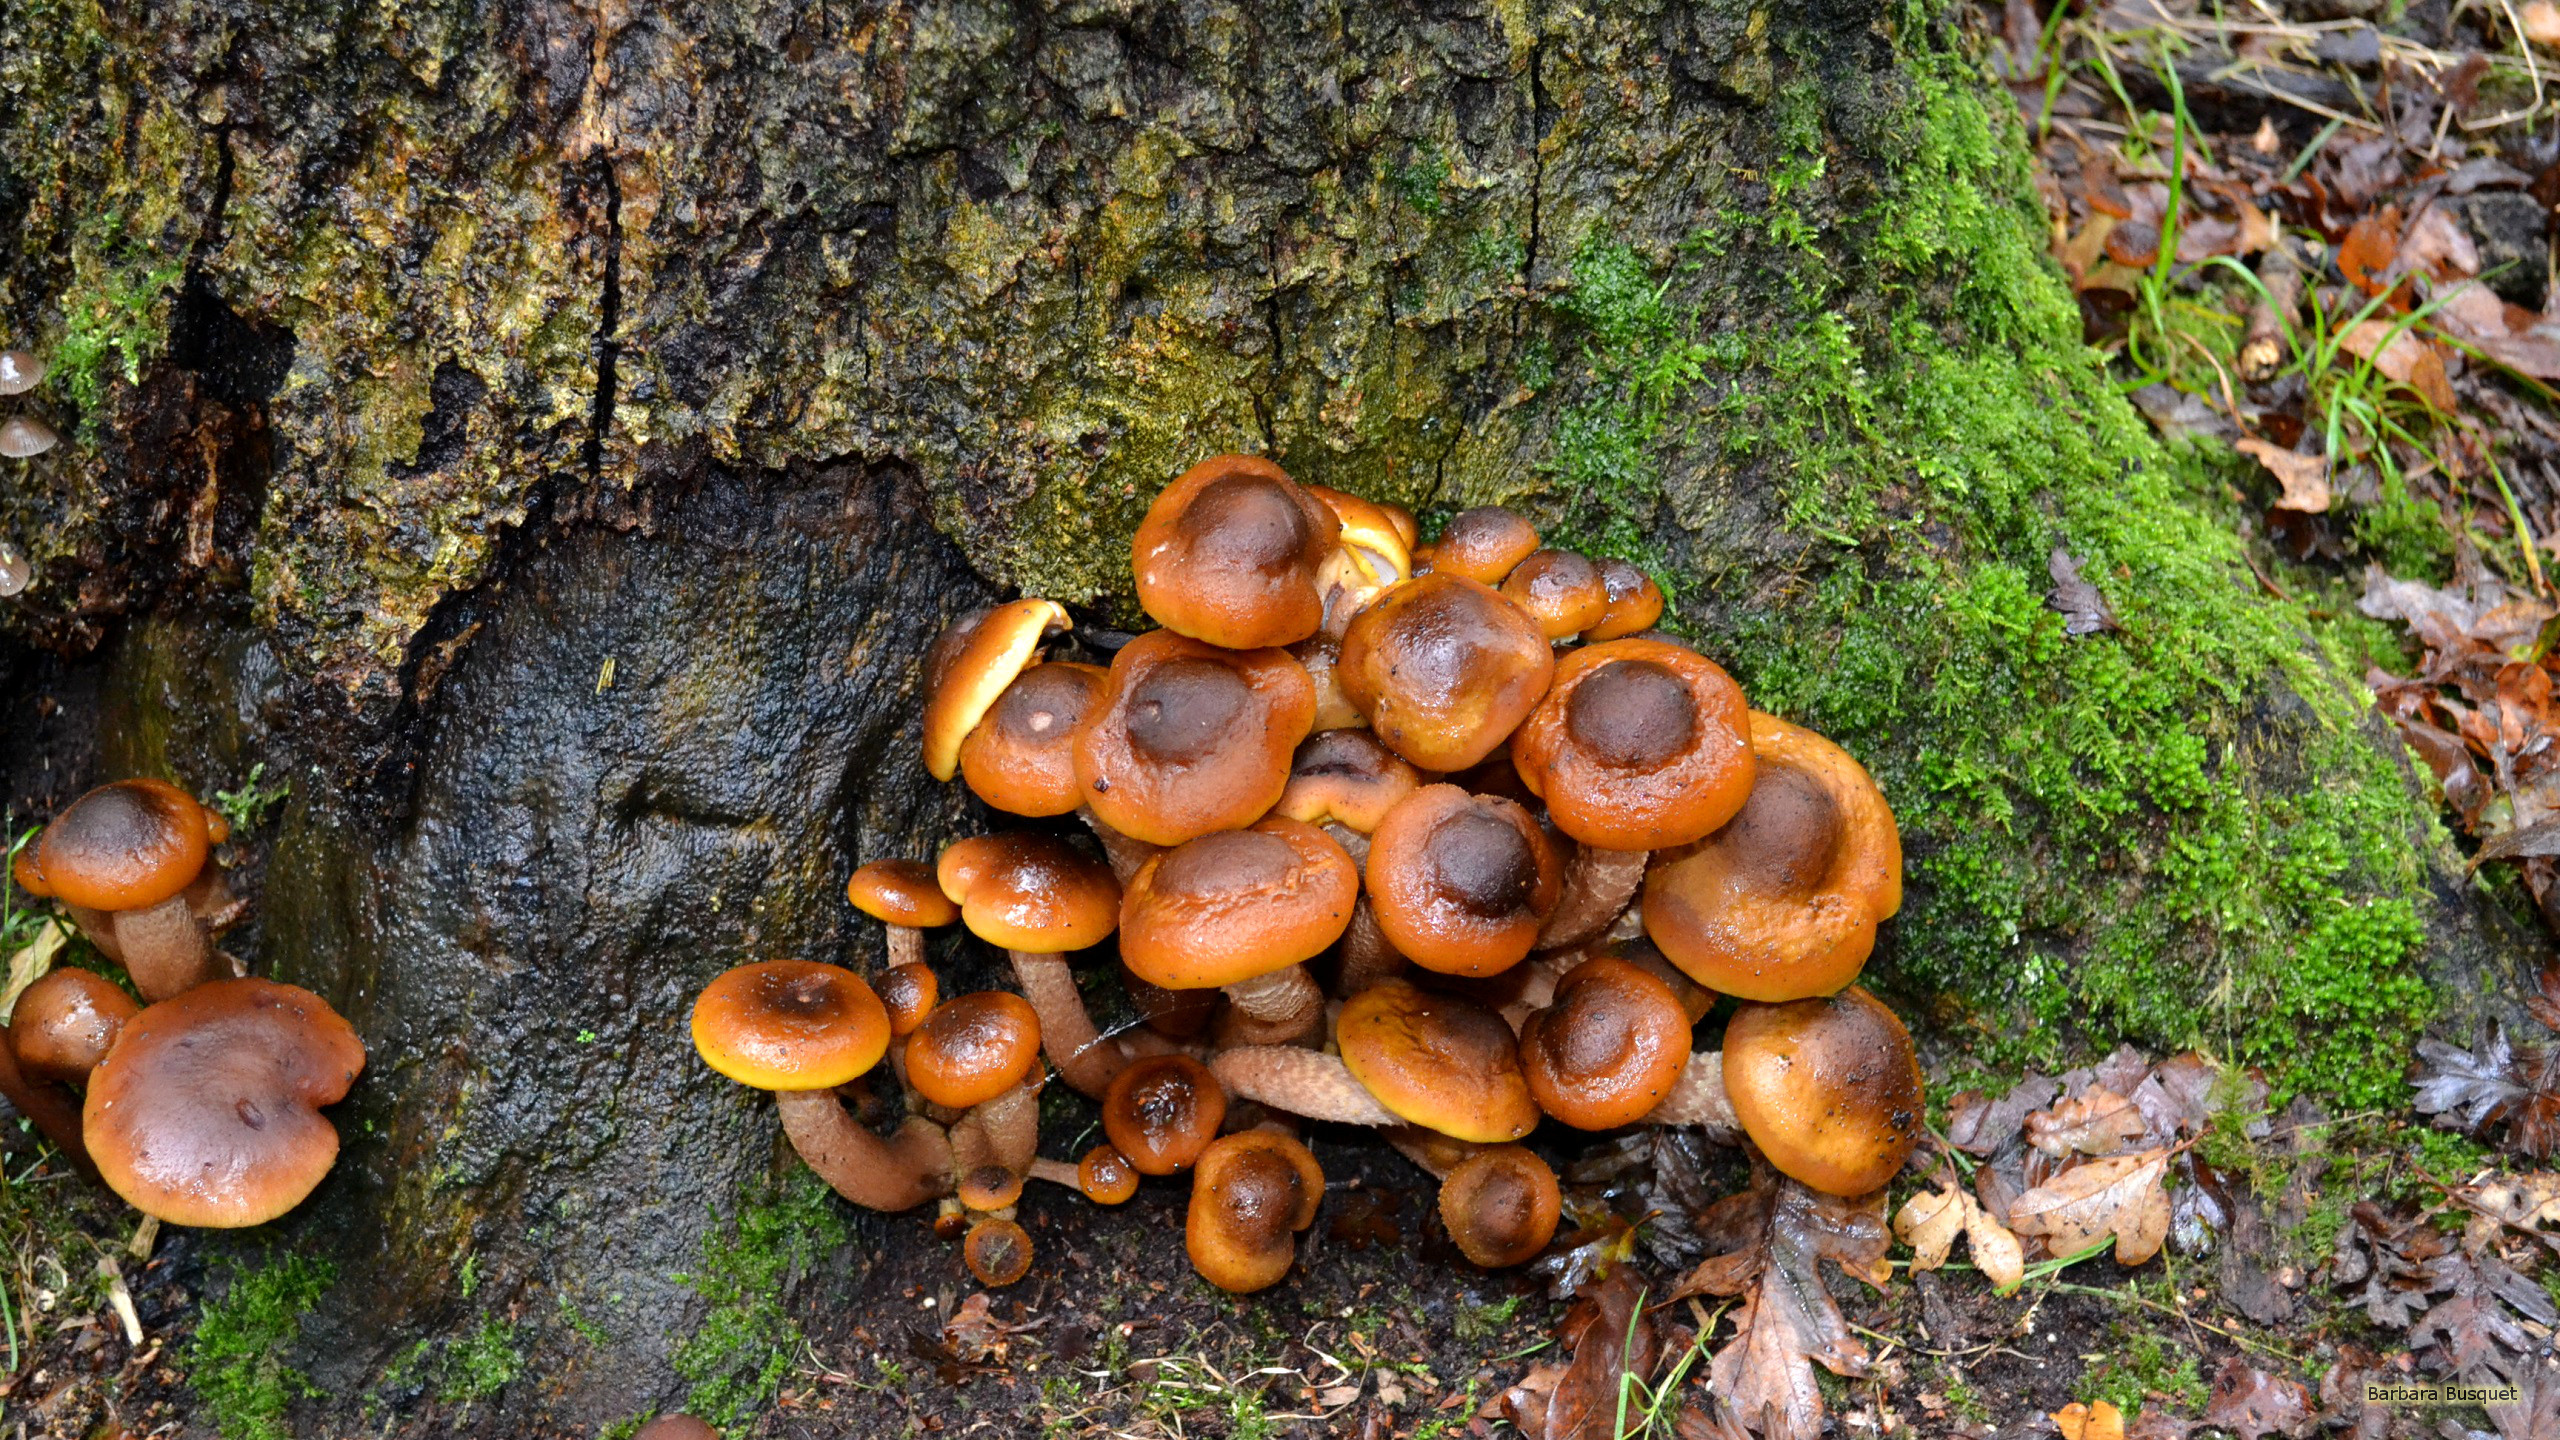 2560x1440 Autumn wallpaper mushrooms near a tree.